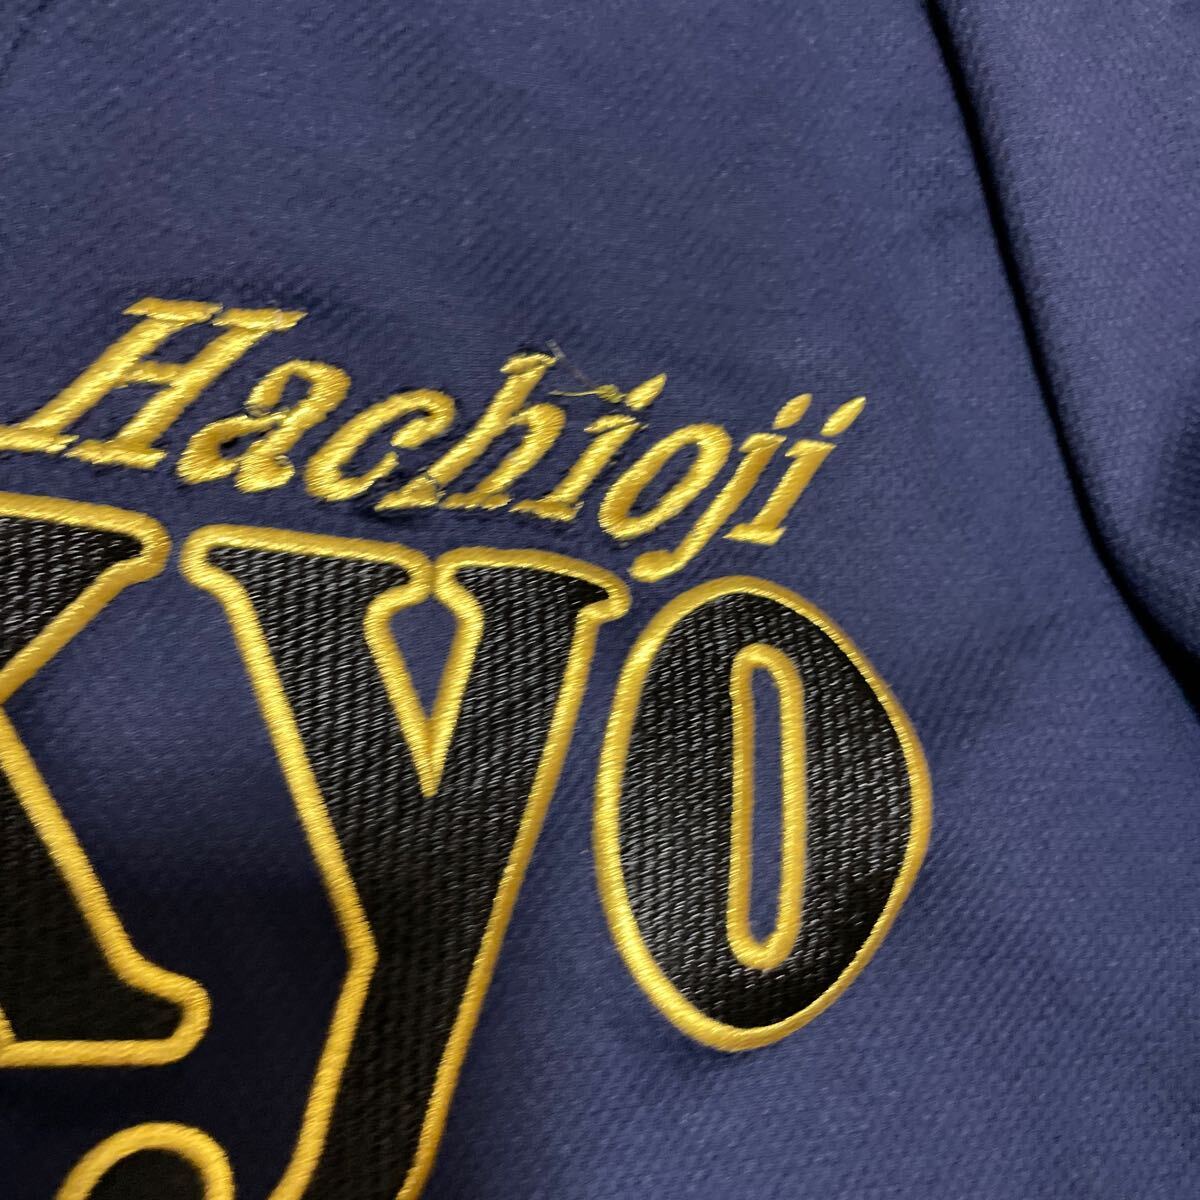 帝京高校 八王子 野球部 支給 着用 刺繍ロゴ アシックス asics ユニフォーム プラクティスシャツ Lサイズ_画像6